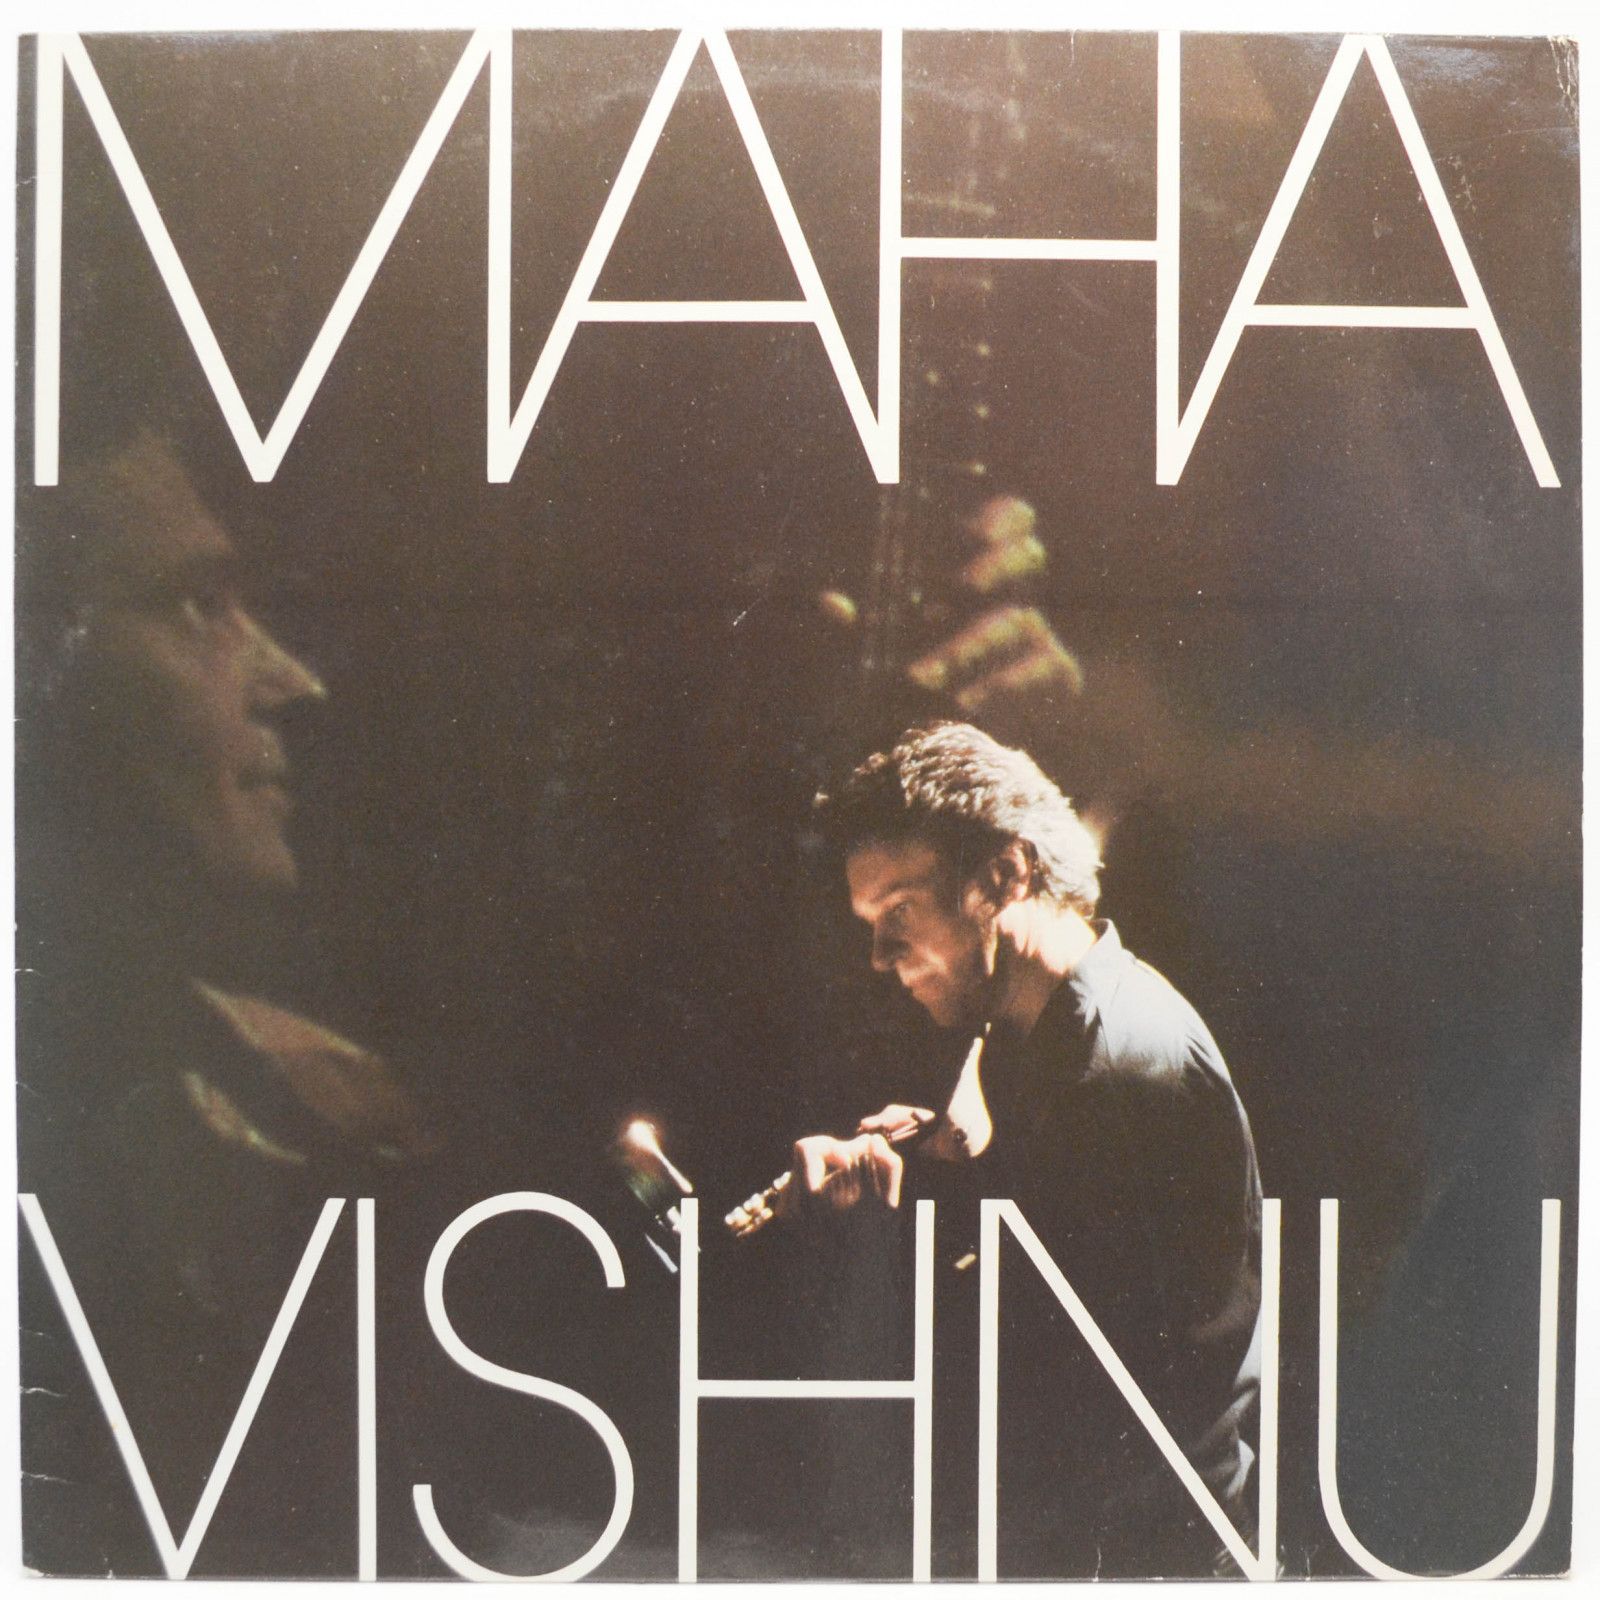 Mahavishnu — Mahavishnu, 1984